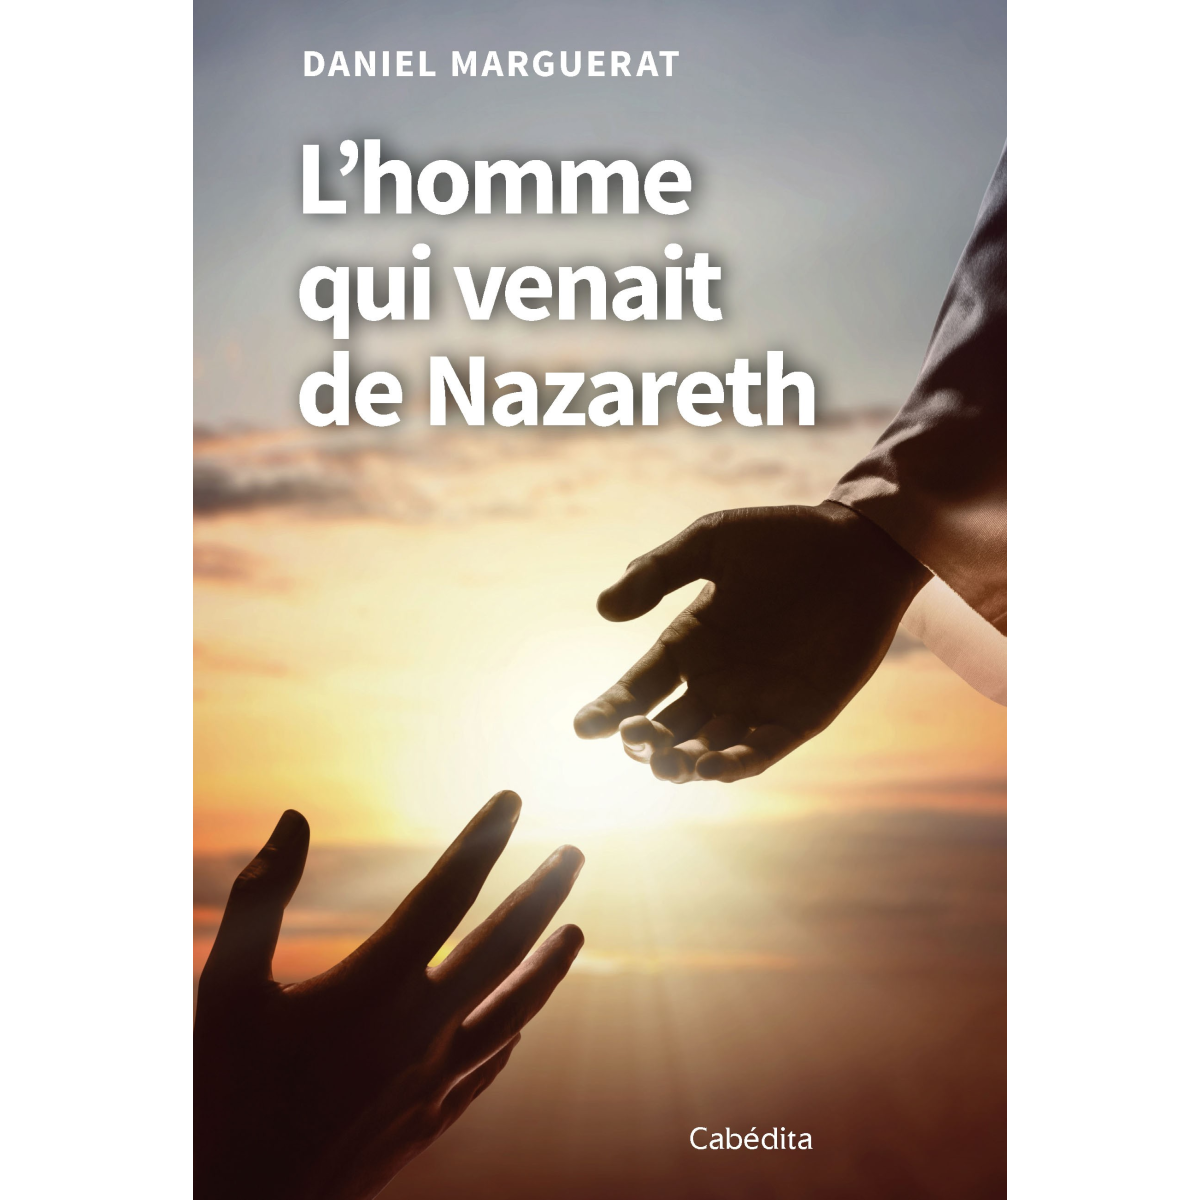 L’homme qui venait de Nazareth - Daniel Marguerat